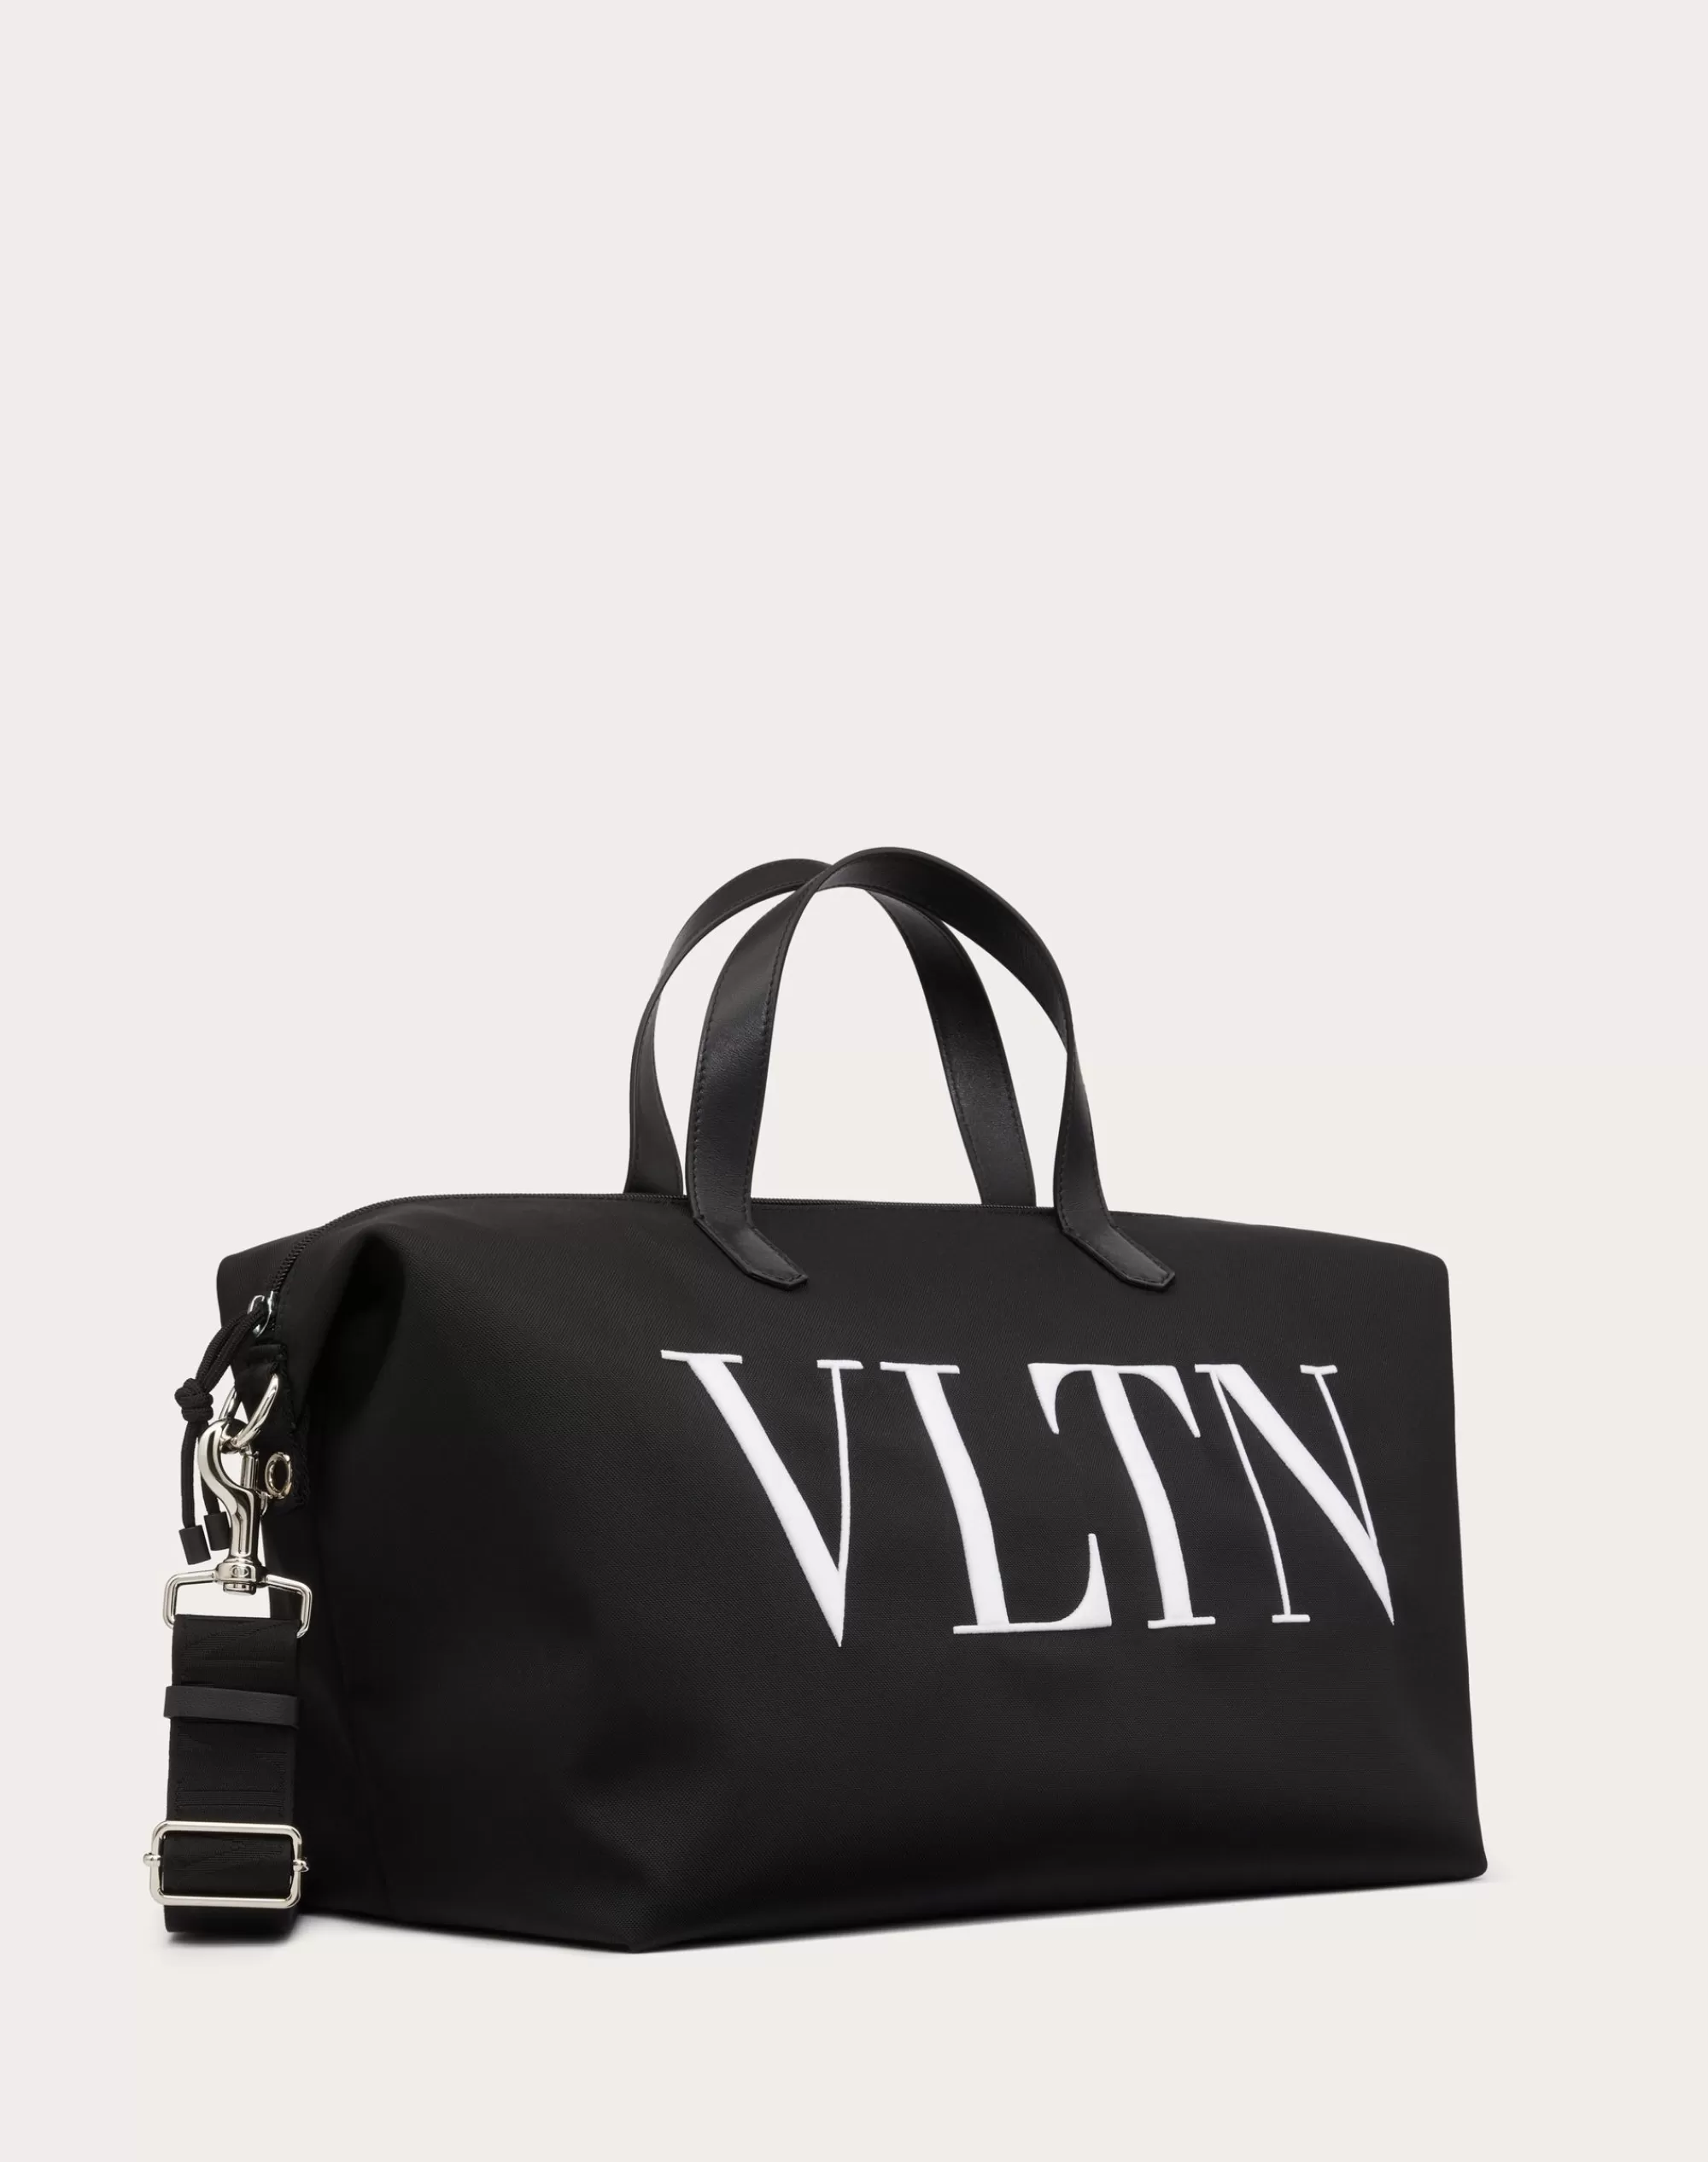 Valentino VLTN NYLON TRAVEL BAG Black/white Discount